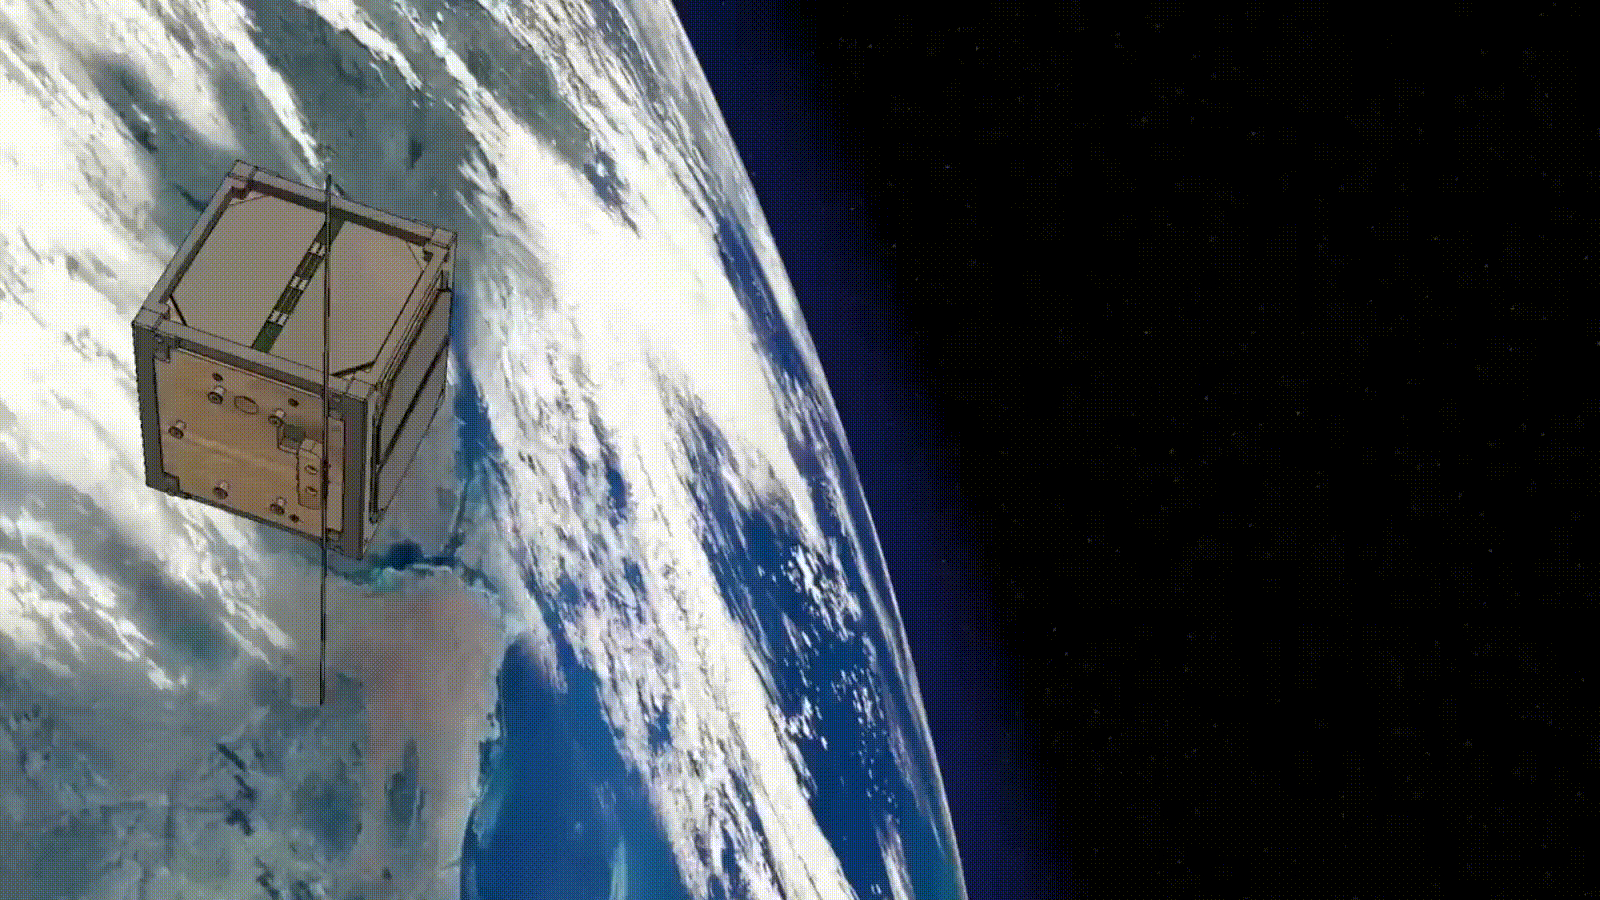 Анимация спутника LignoSat в рамках проекта J-Cube на орбите Земли